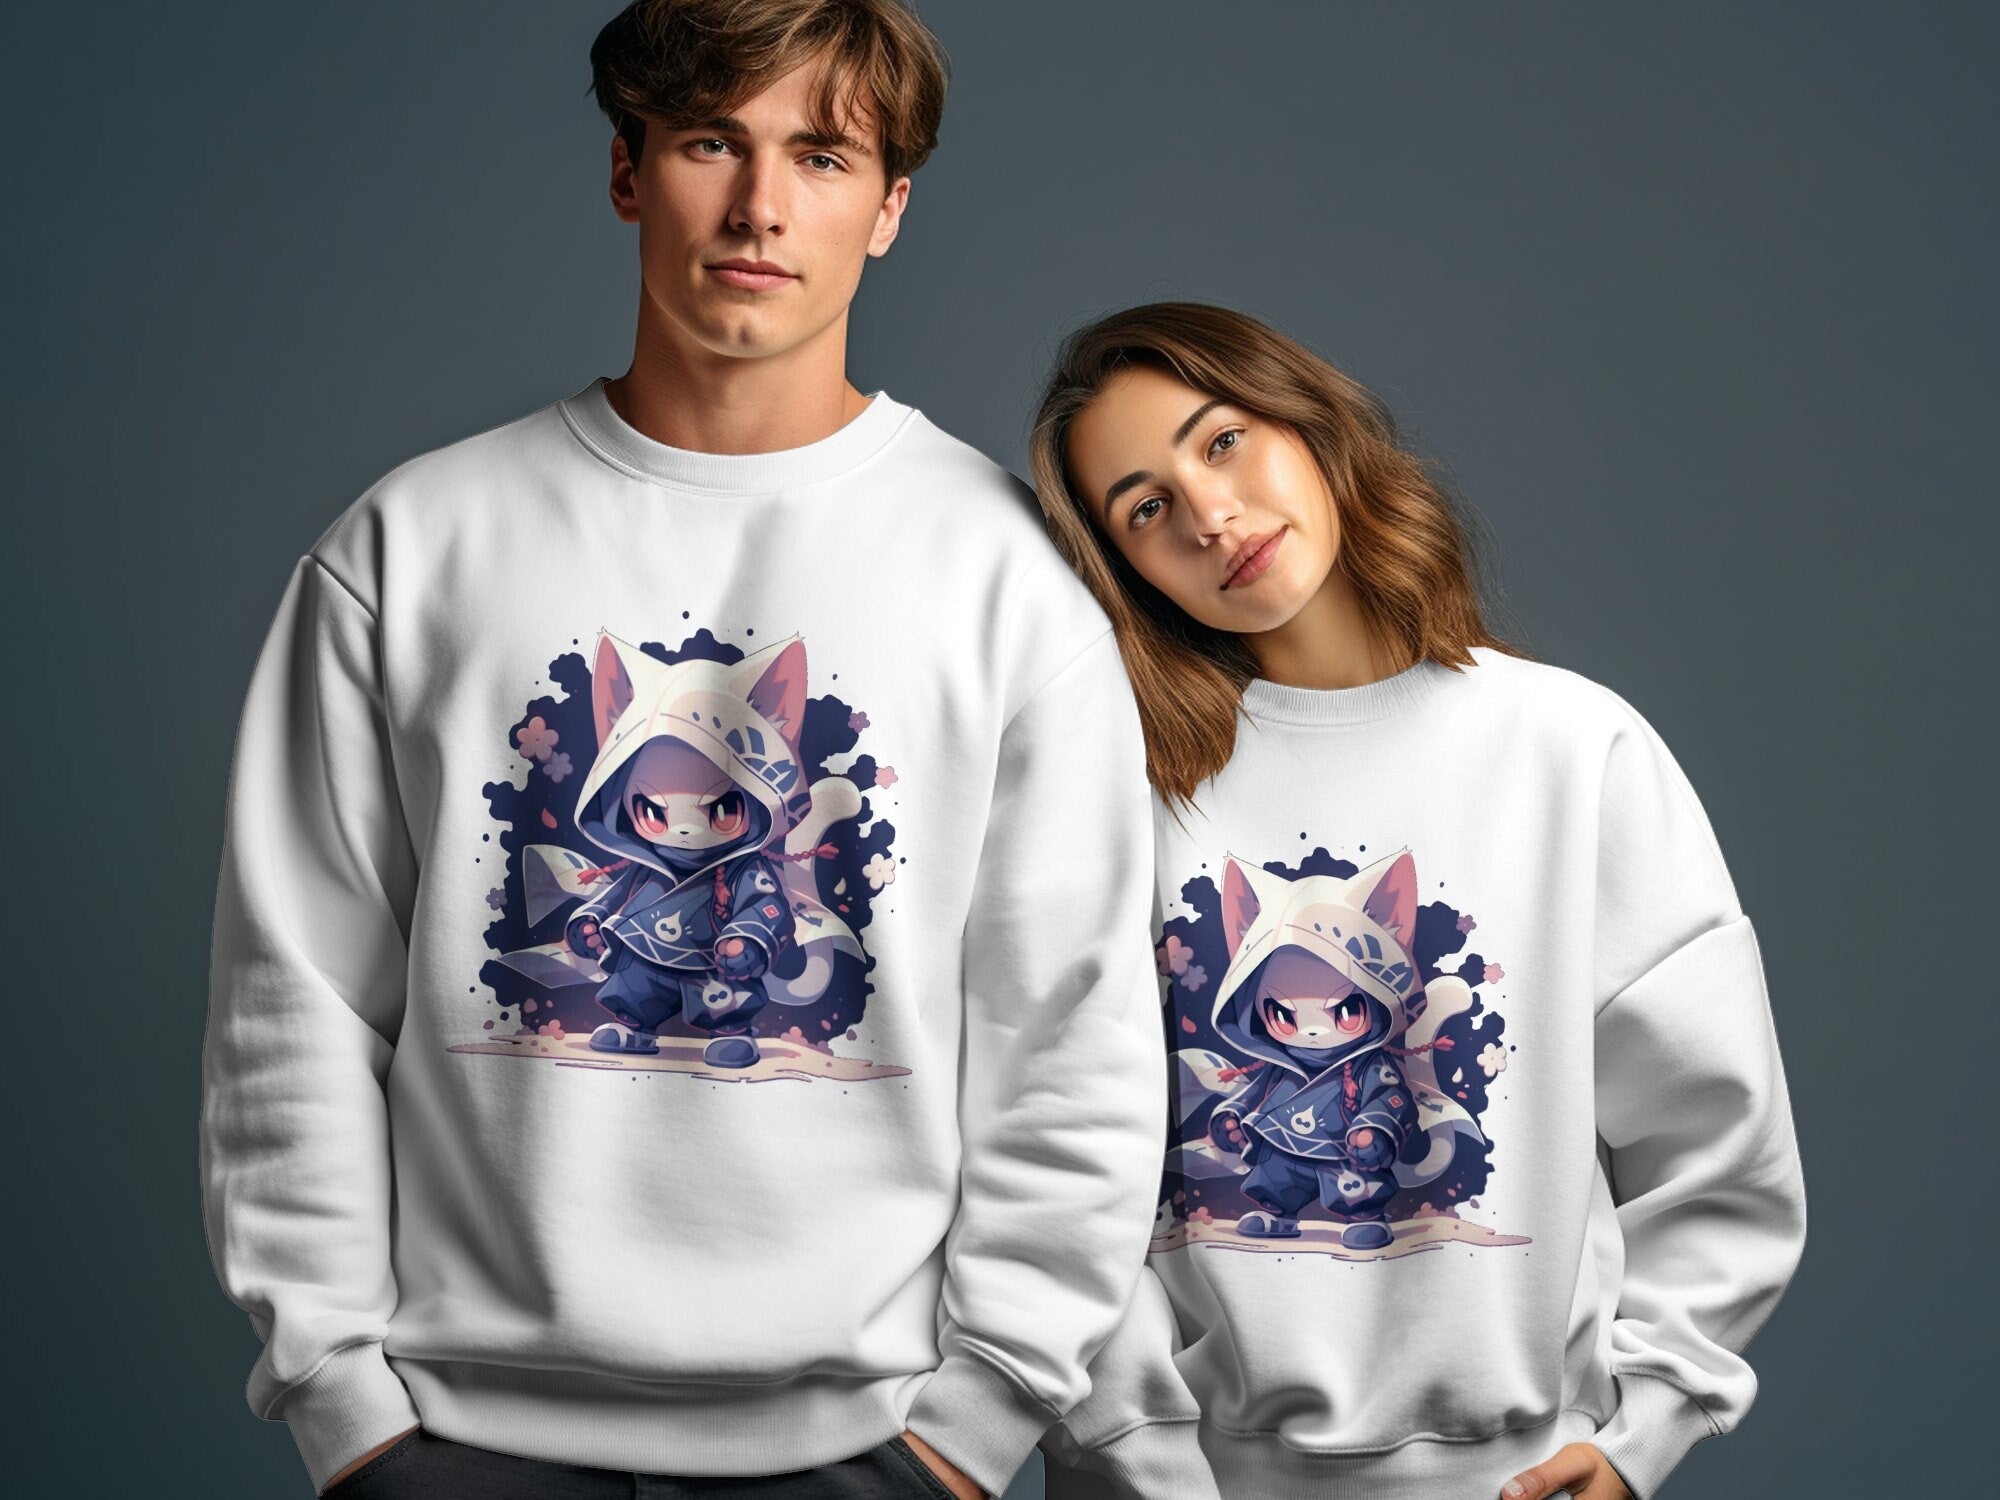 Cute Ninja Fox Sweatshirt - MiTo Store